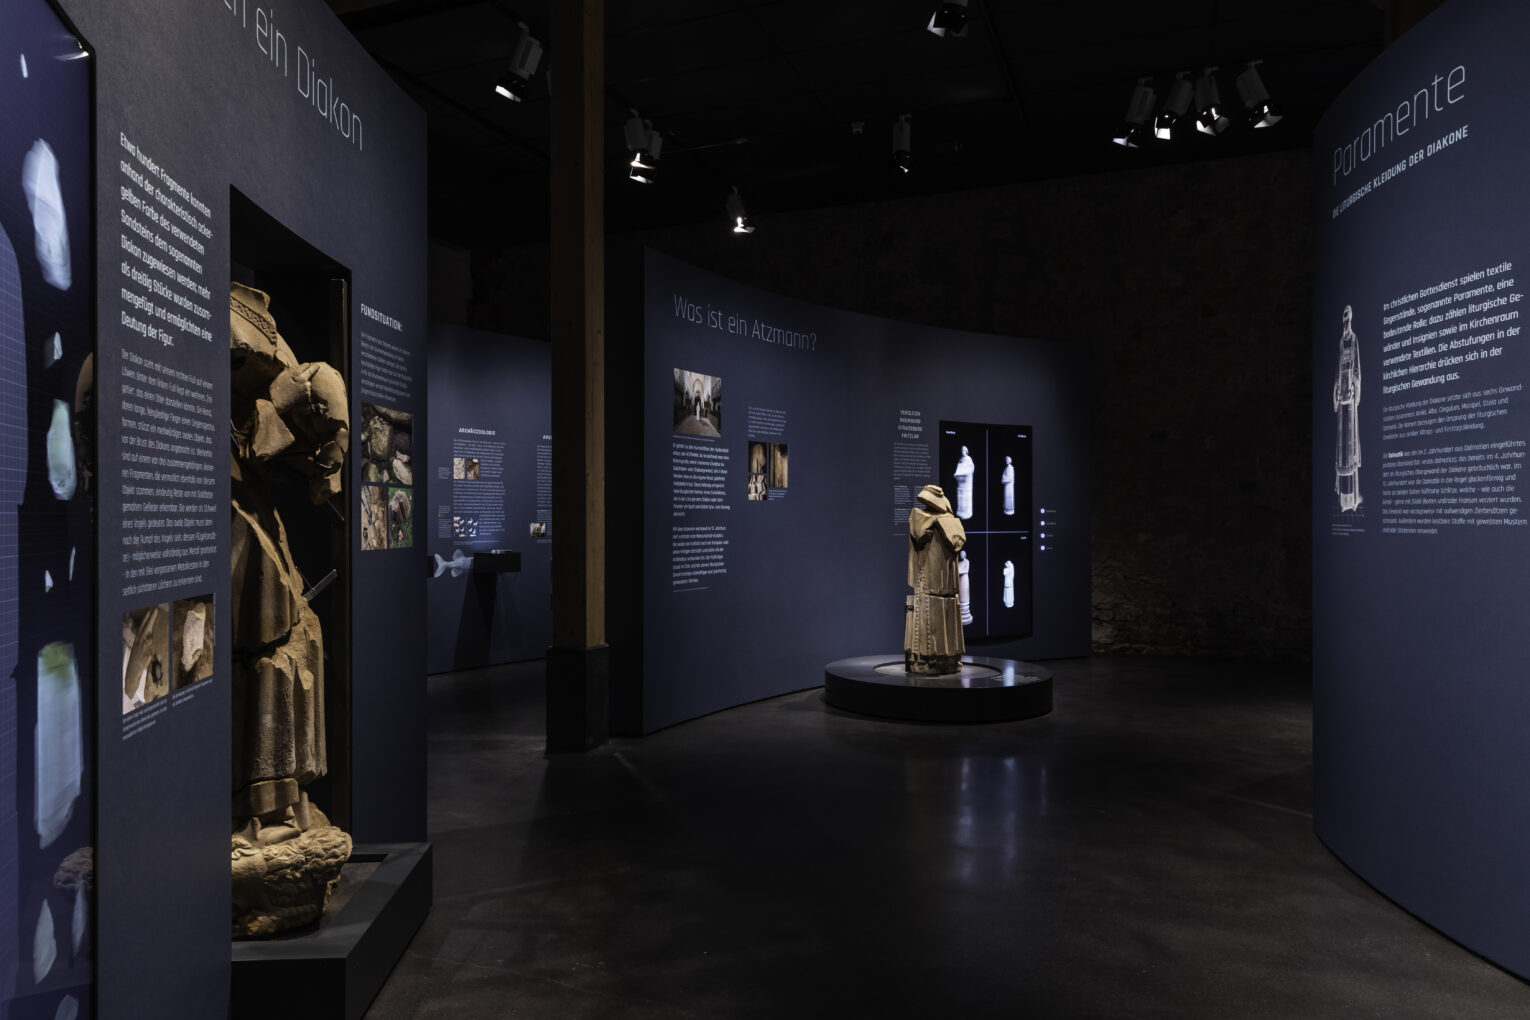 Blick in die Ausstellung mit dem kopflosen"Atzmann" als zentraler Skulptur.